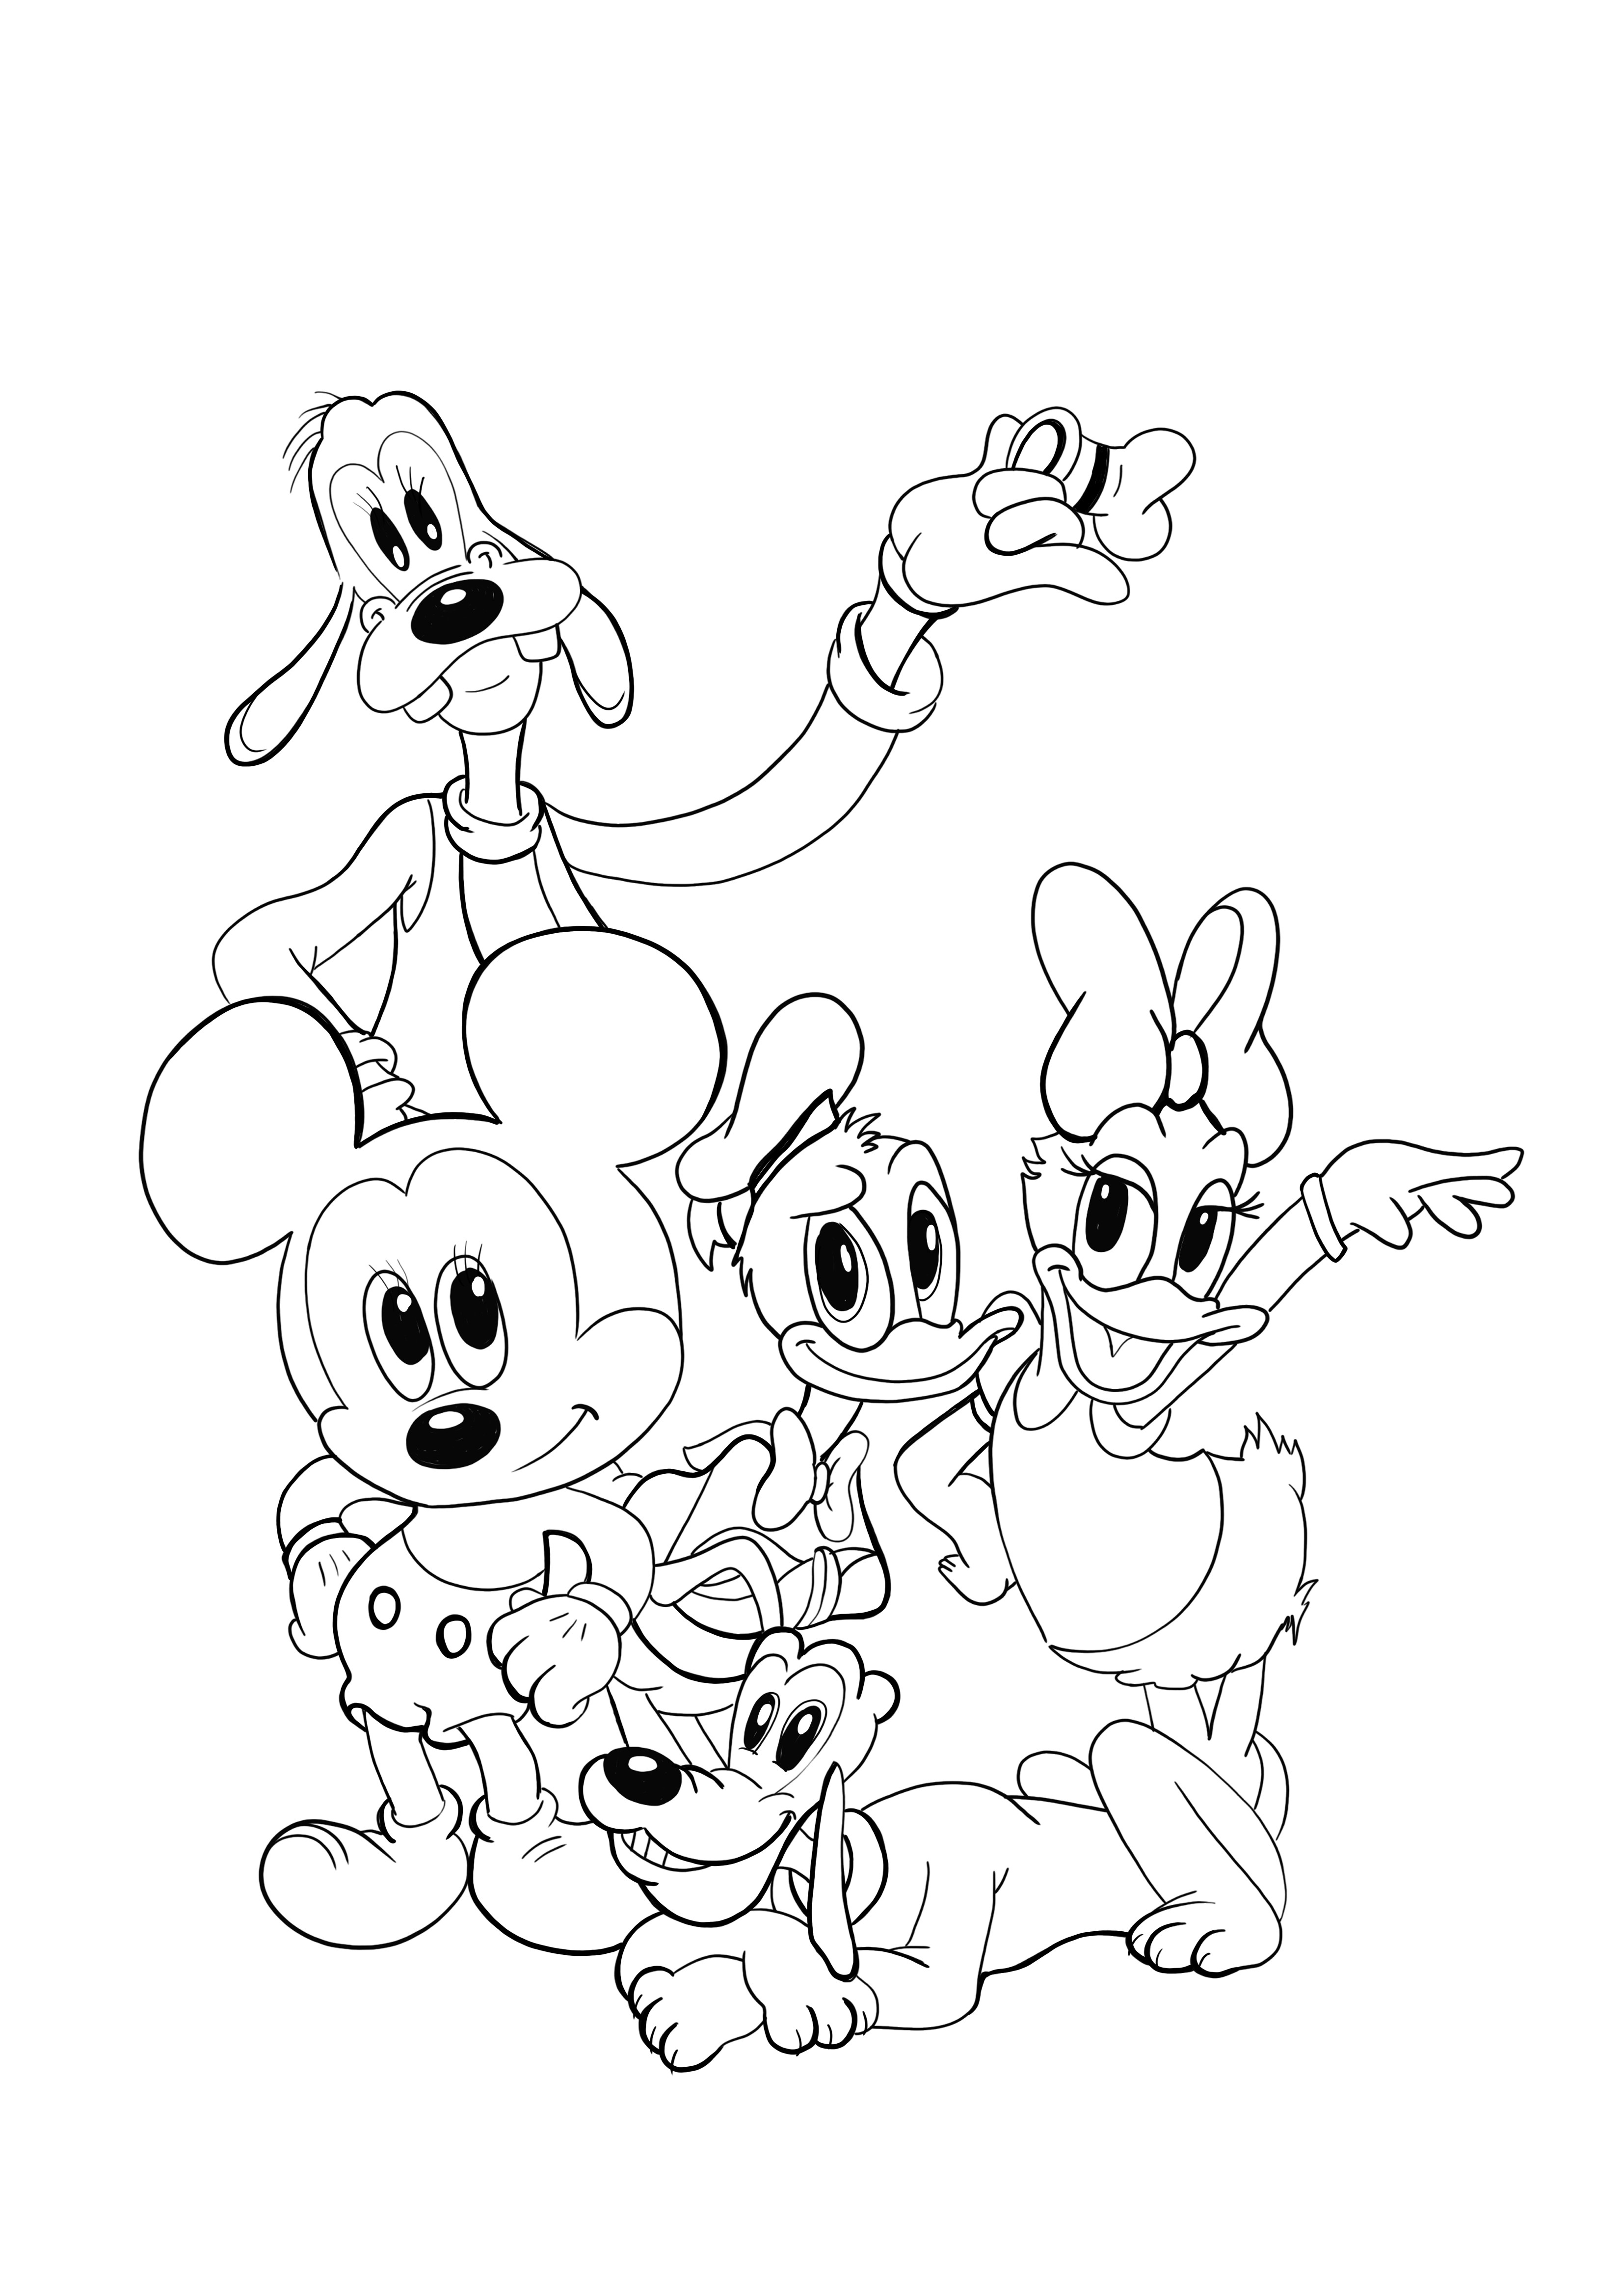 Genç Plüton-Minnie-Donald-ve-arkadaşları boyama sayfası ücretsiz olarak indirilebilir